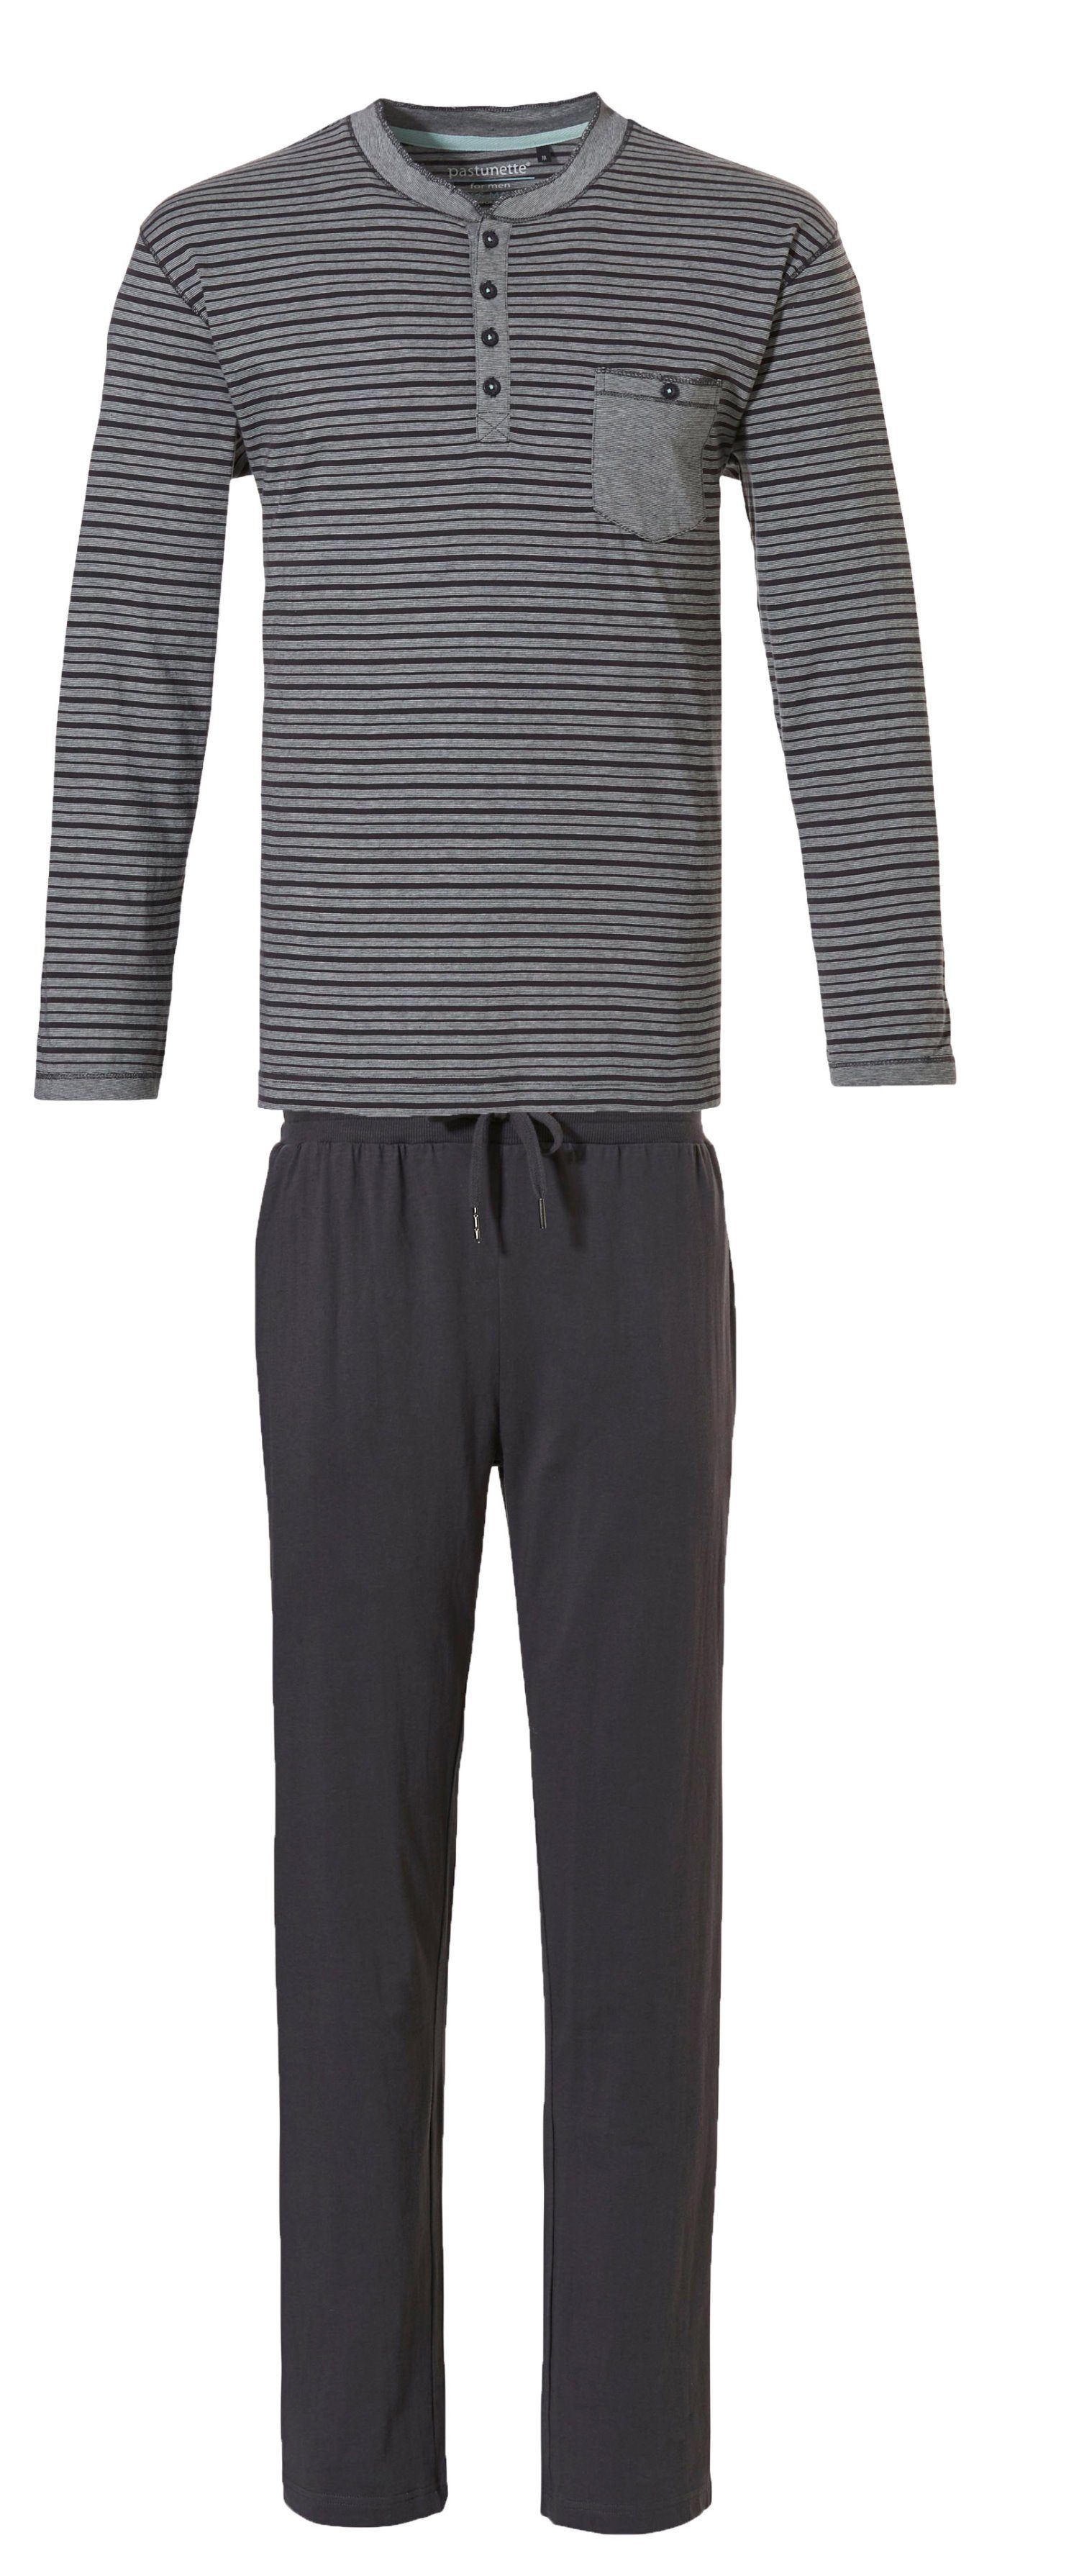 Pastunette Pyjama Pastunette Herren Schlafanzug lang Baumwolle Mix und Match Grey